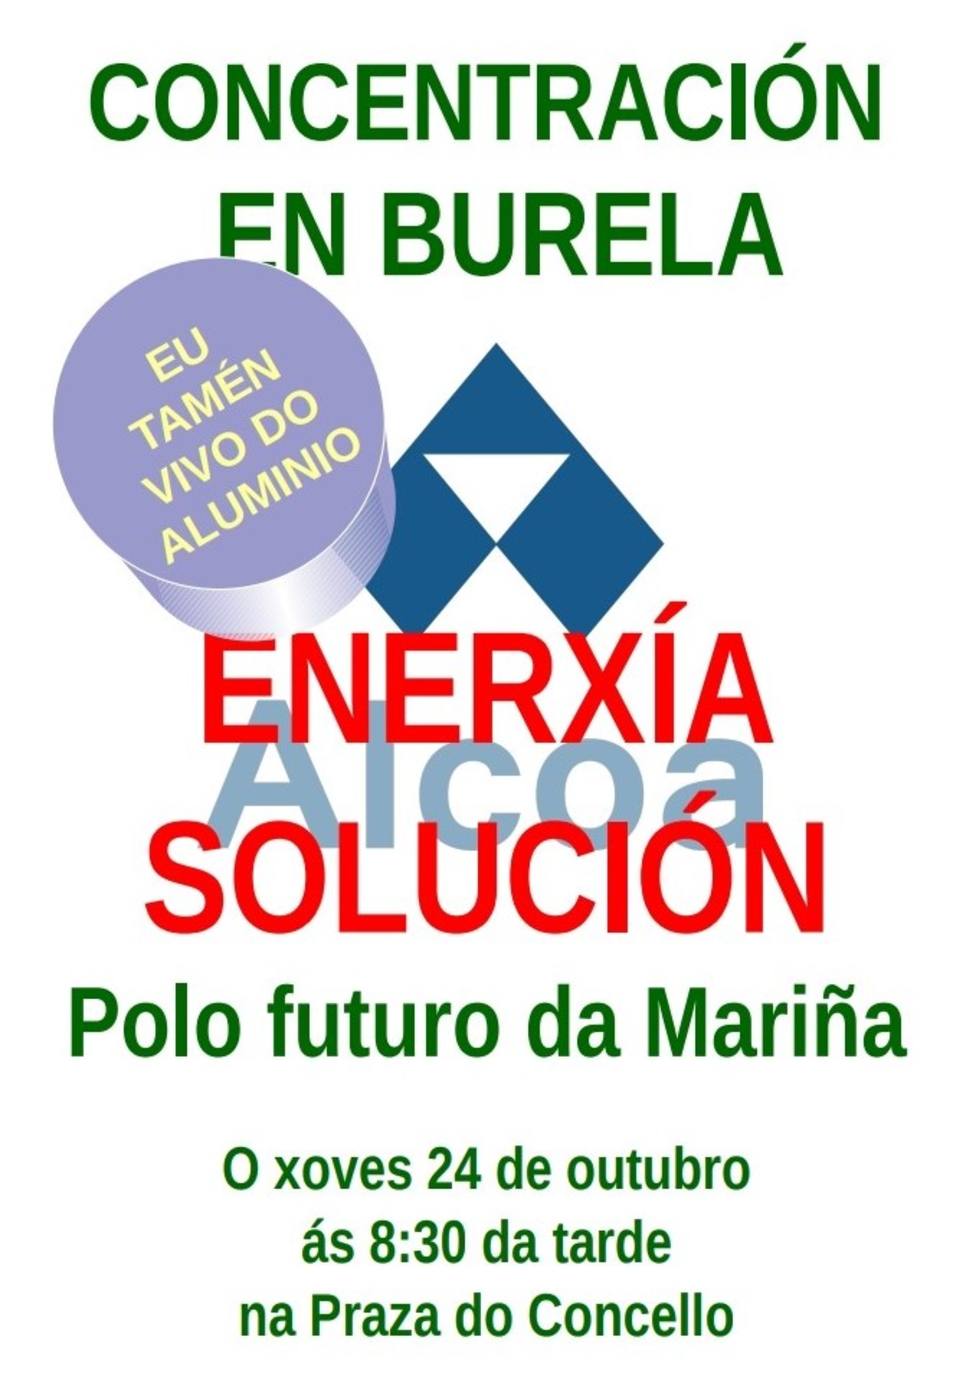 Cartel de la concentración de Burela